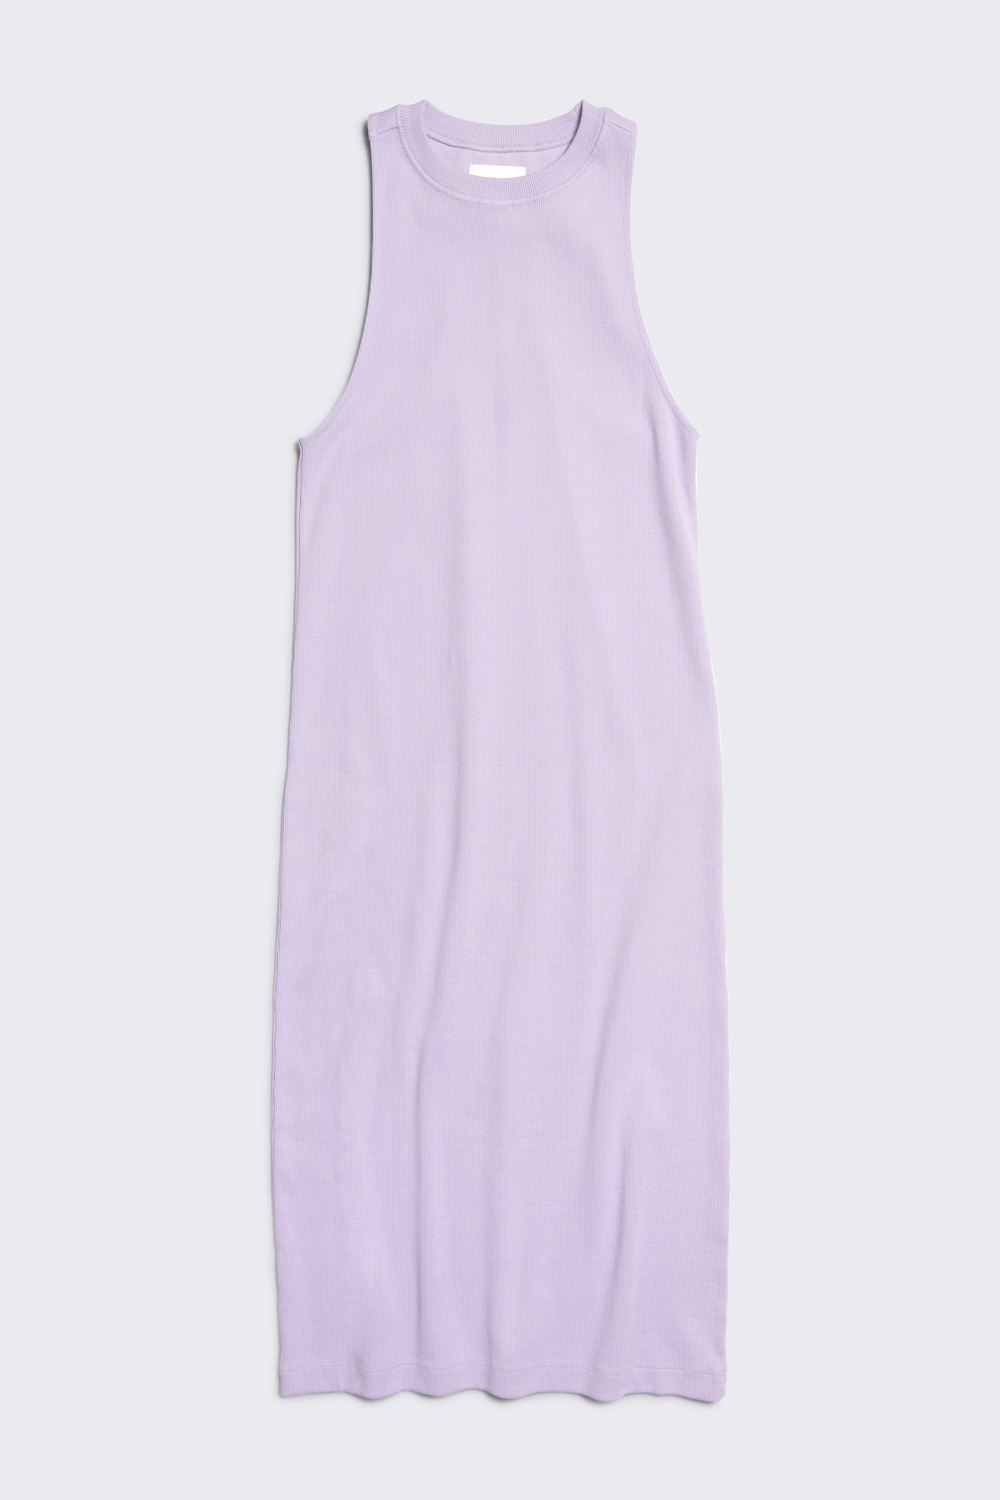 All-Gender Racerback Ribbed Midi Dress in Digital Lavender